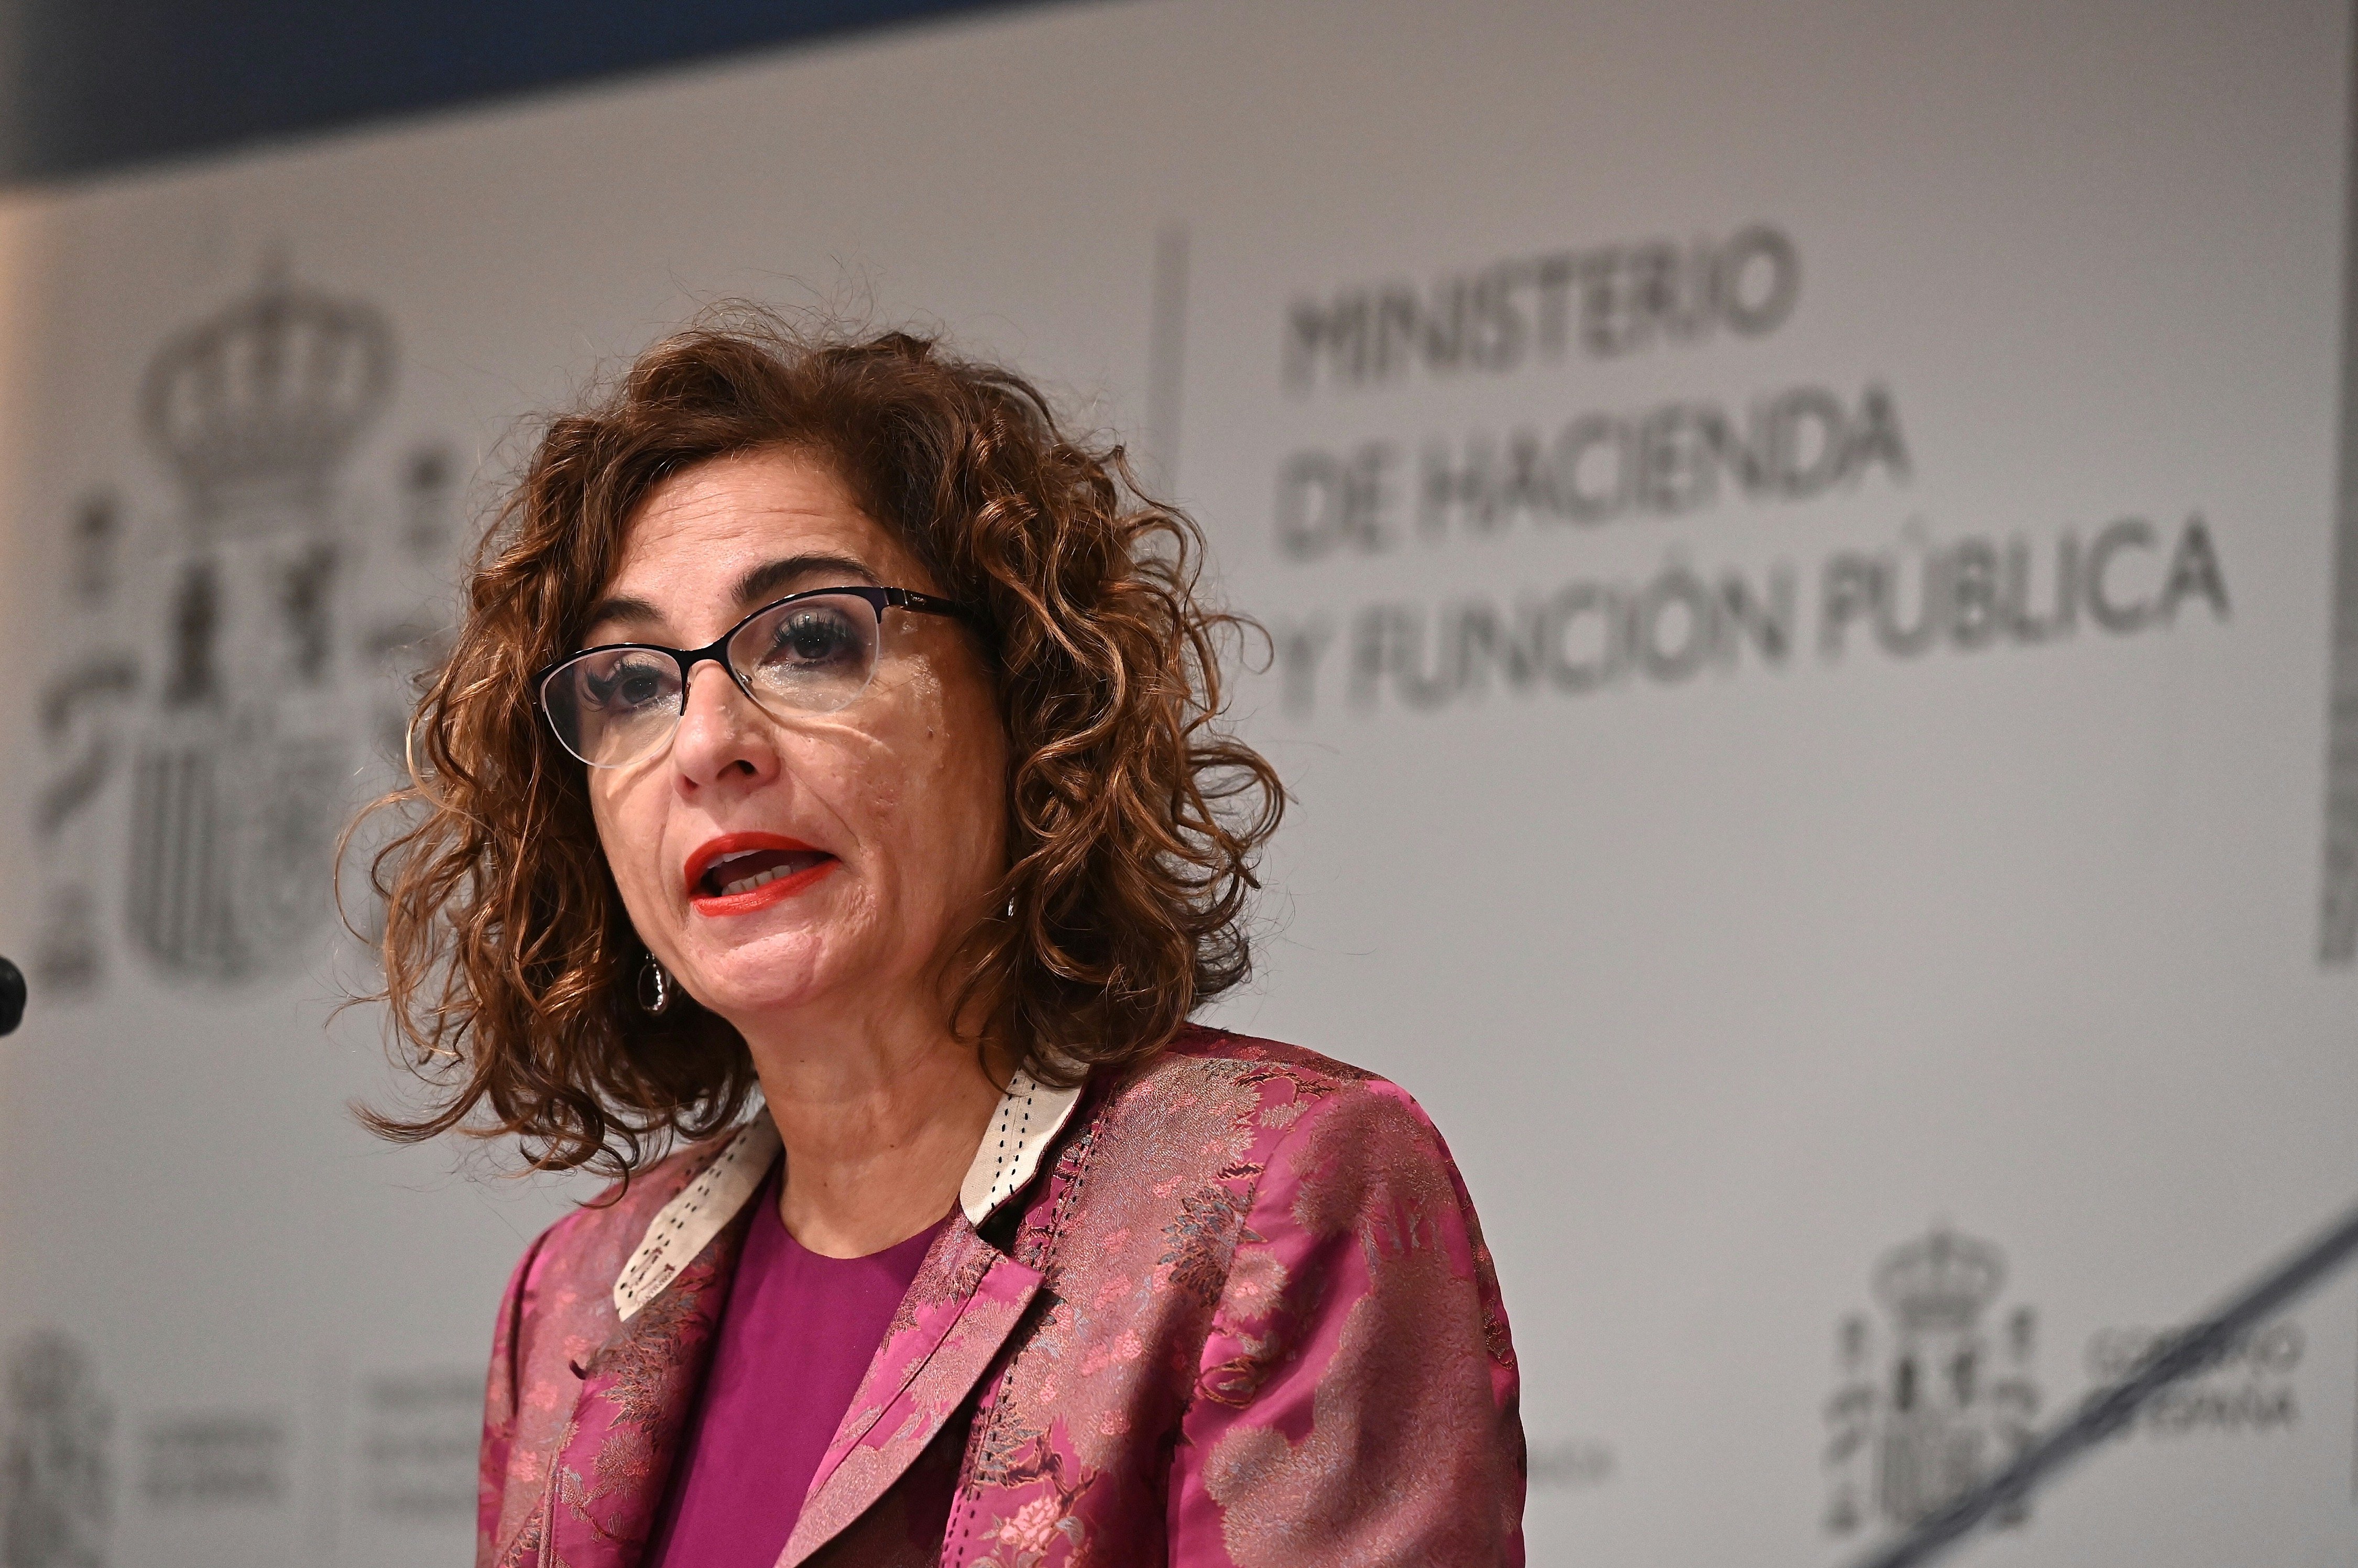 El govern espanyol aplicarà deduccions en l'IRPF a rendes de fins a 21.000 euros anuals